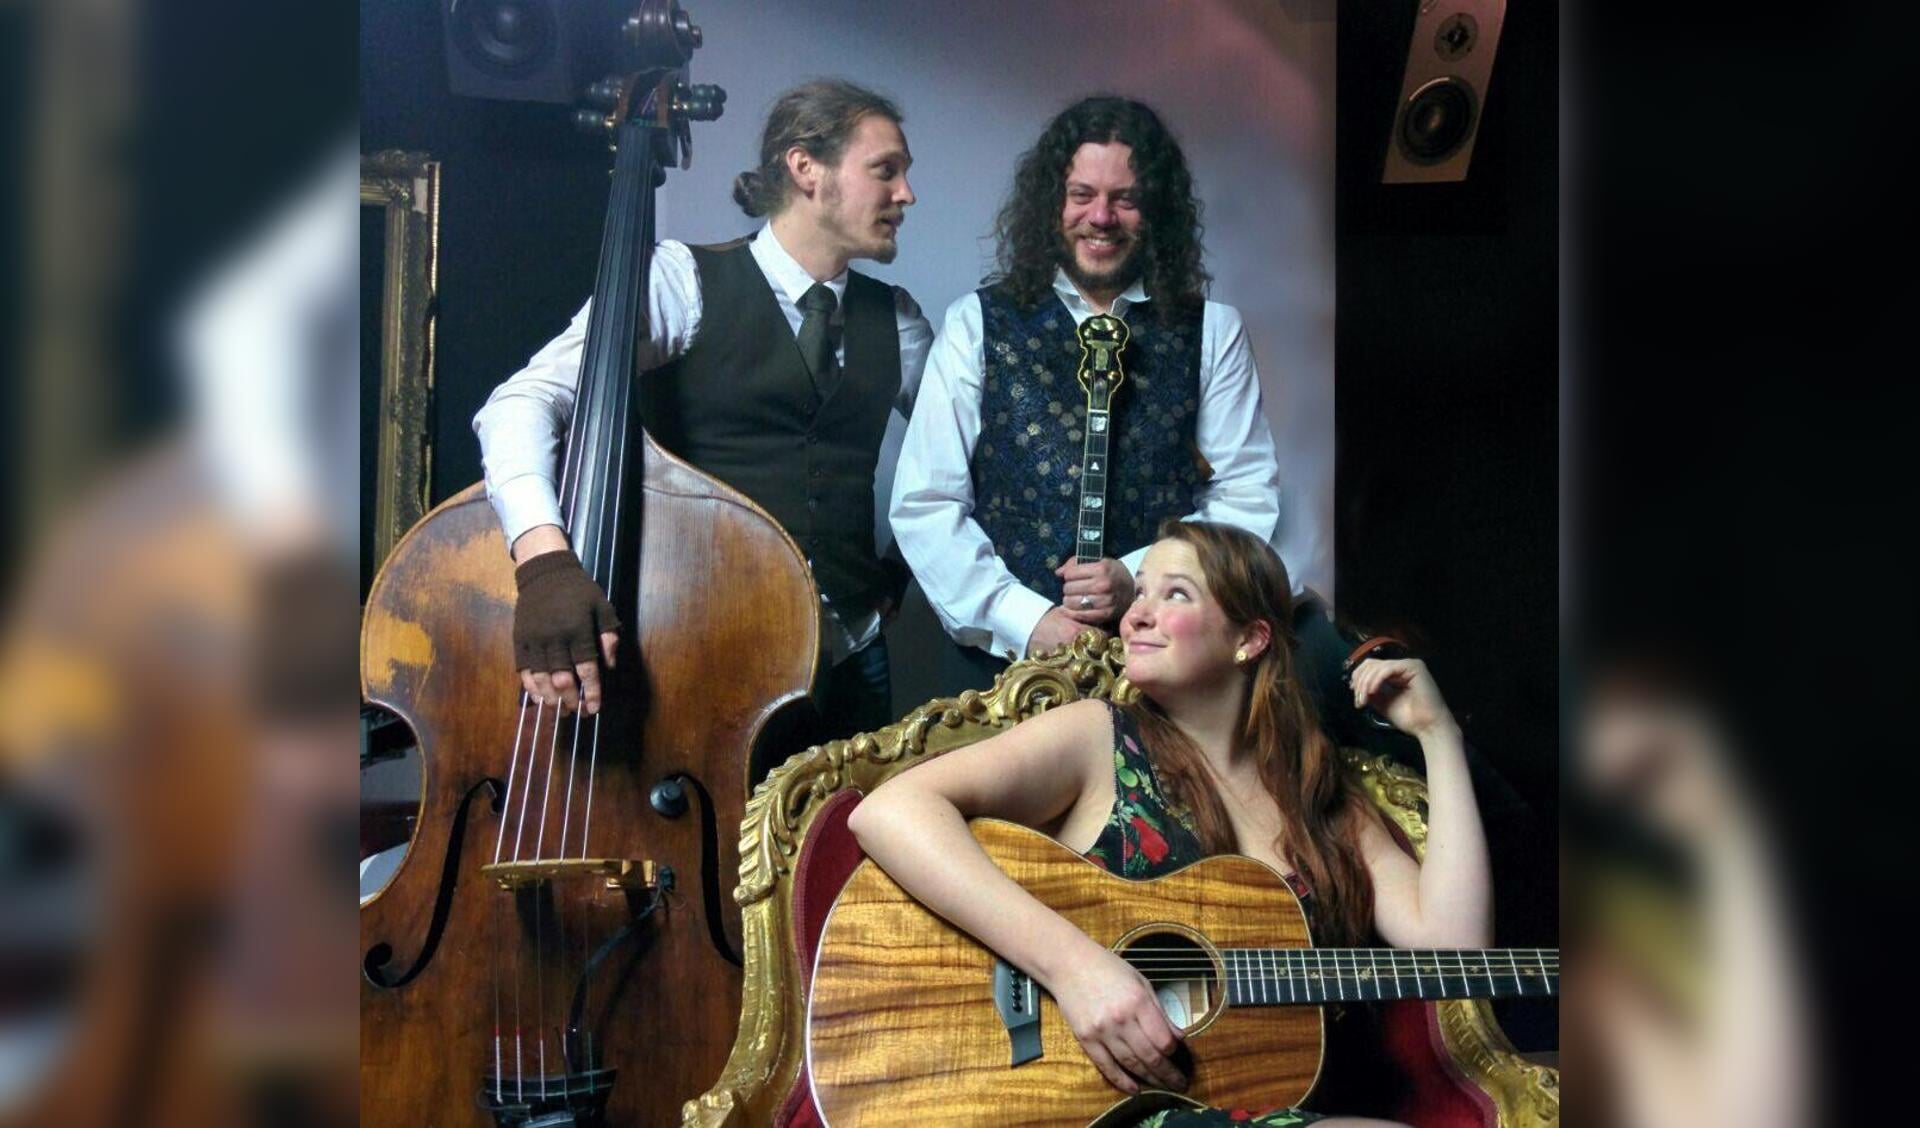 Caiscinn bestaat uit Dominique (links), Sjoerd en Nienke, op respectievelijk de contrabas, banjo en gitaar.